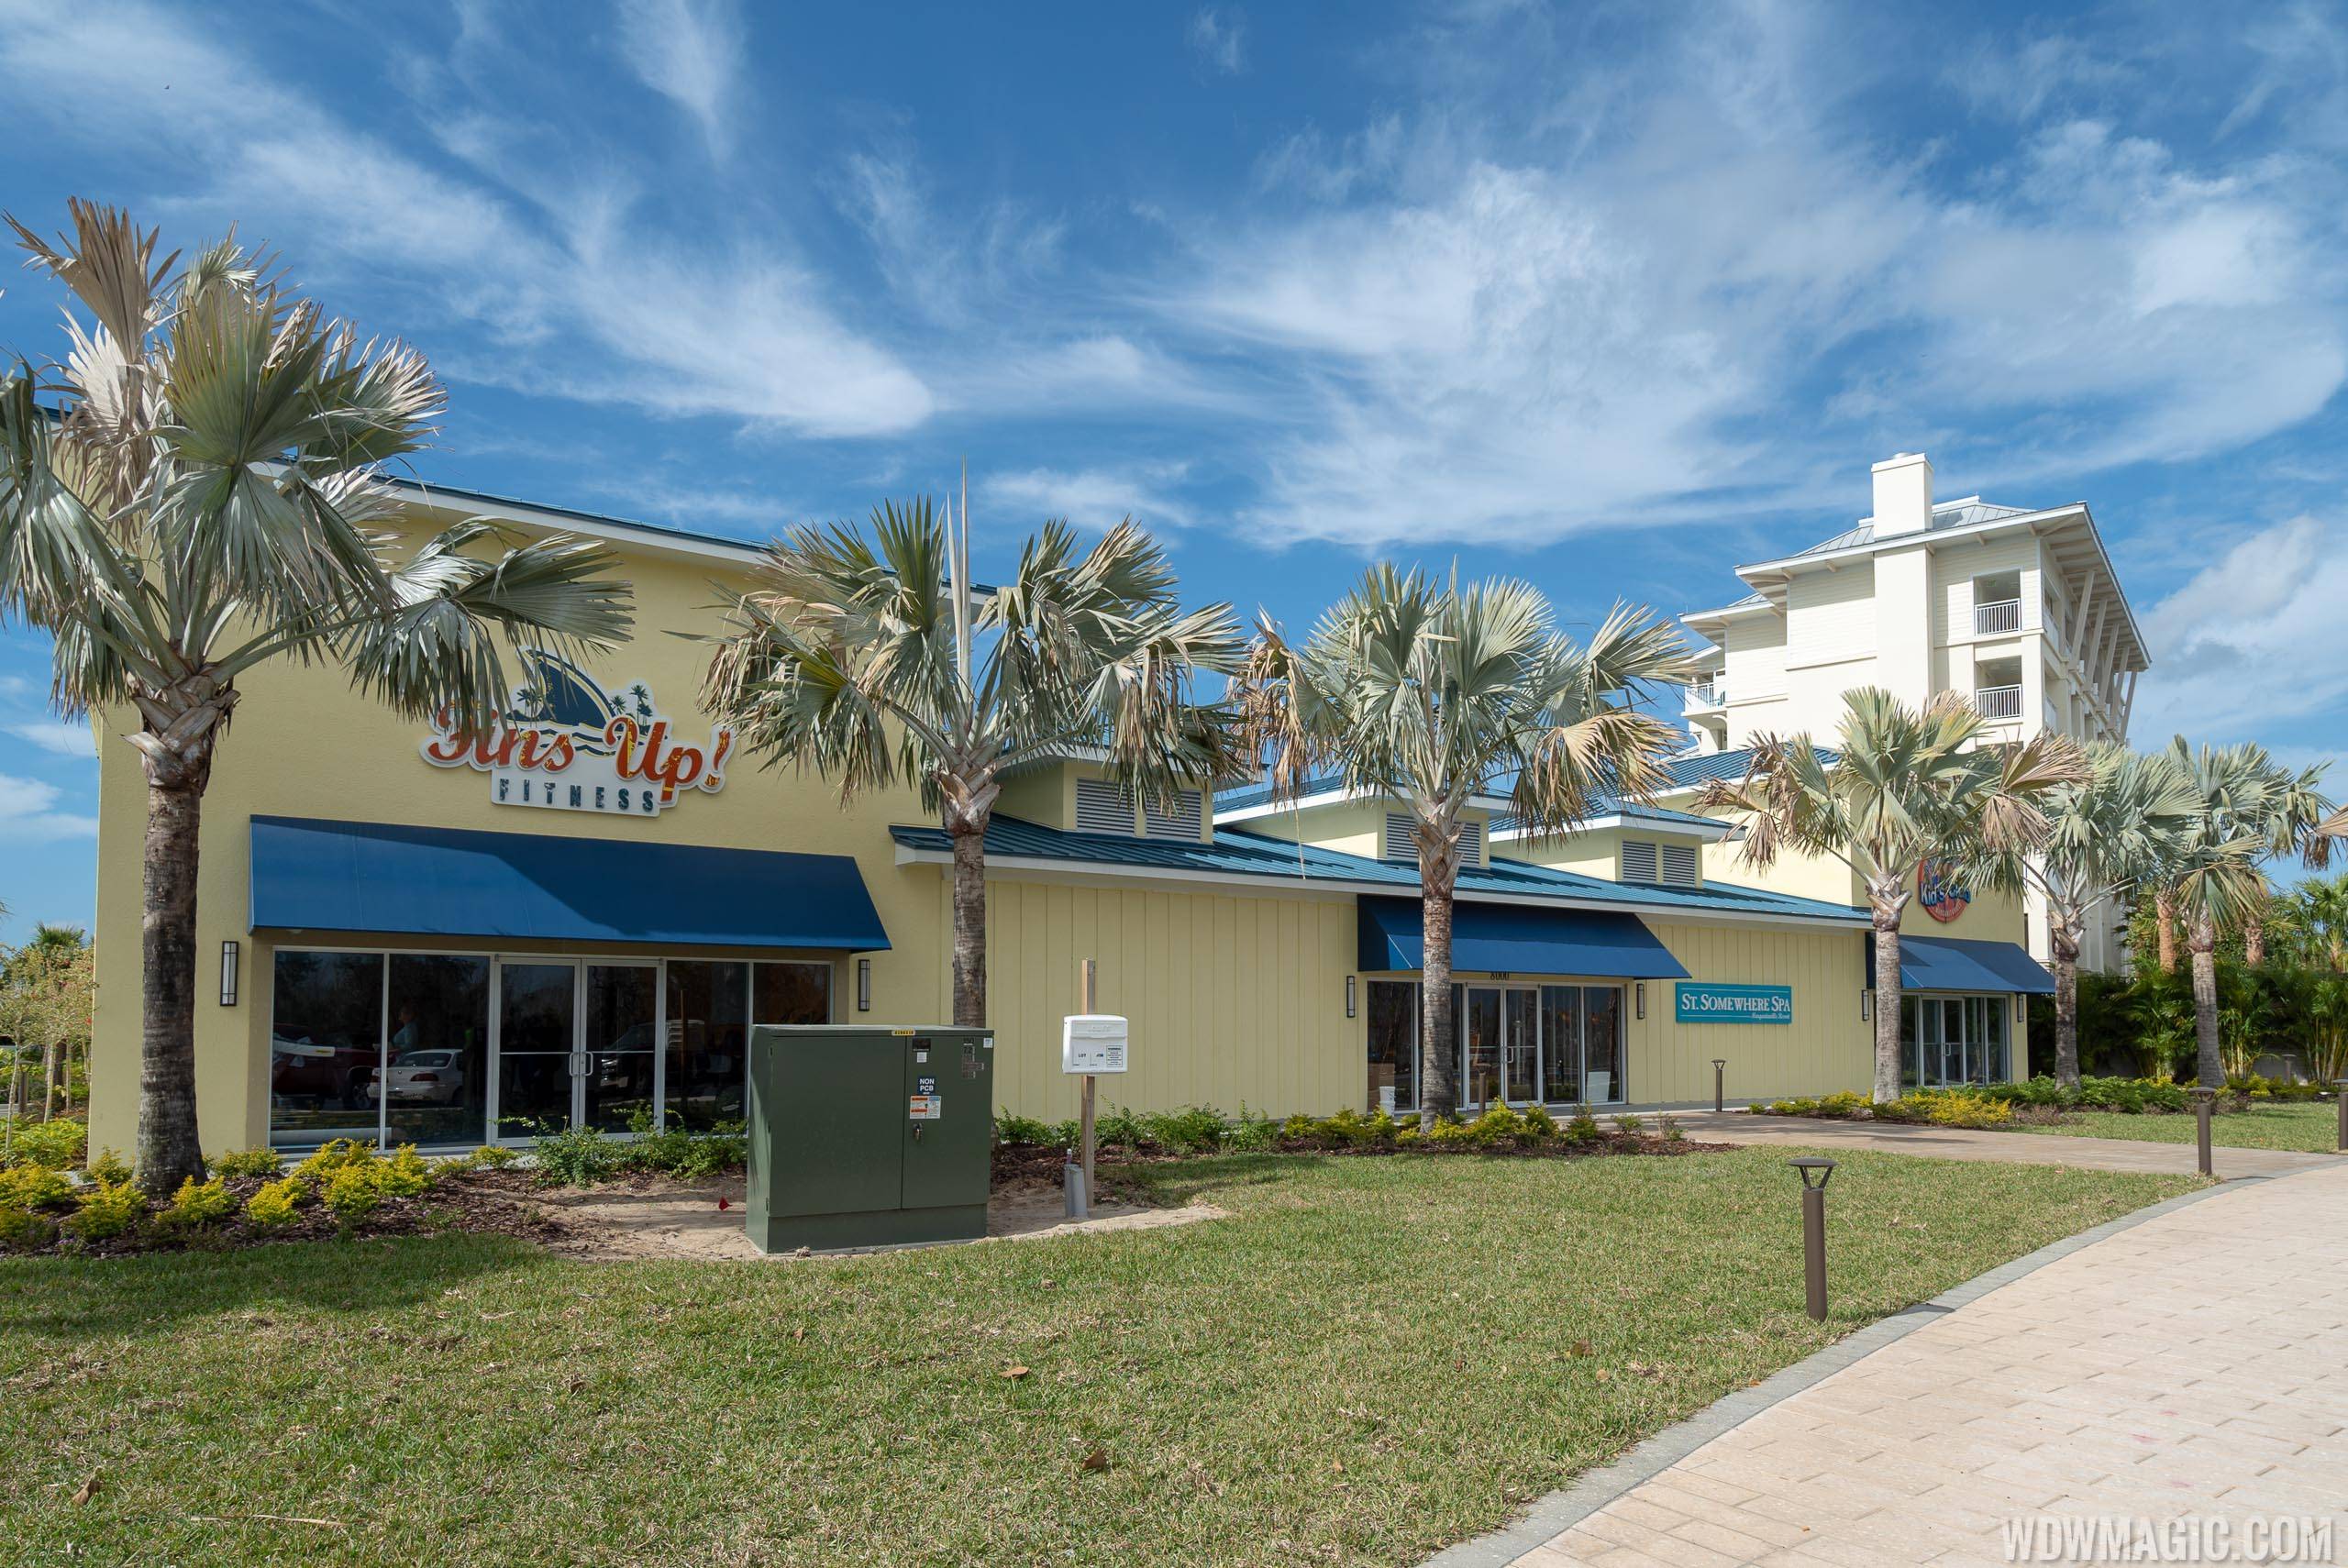 Margaritaville Resort Orlando - Fins Up Fitness